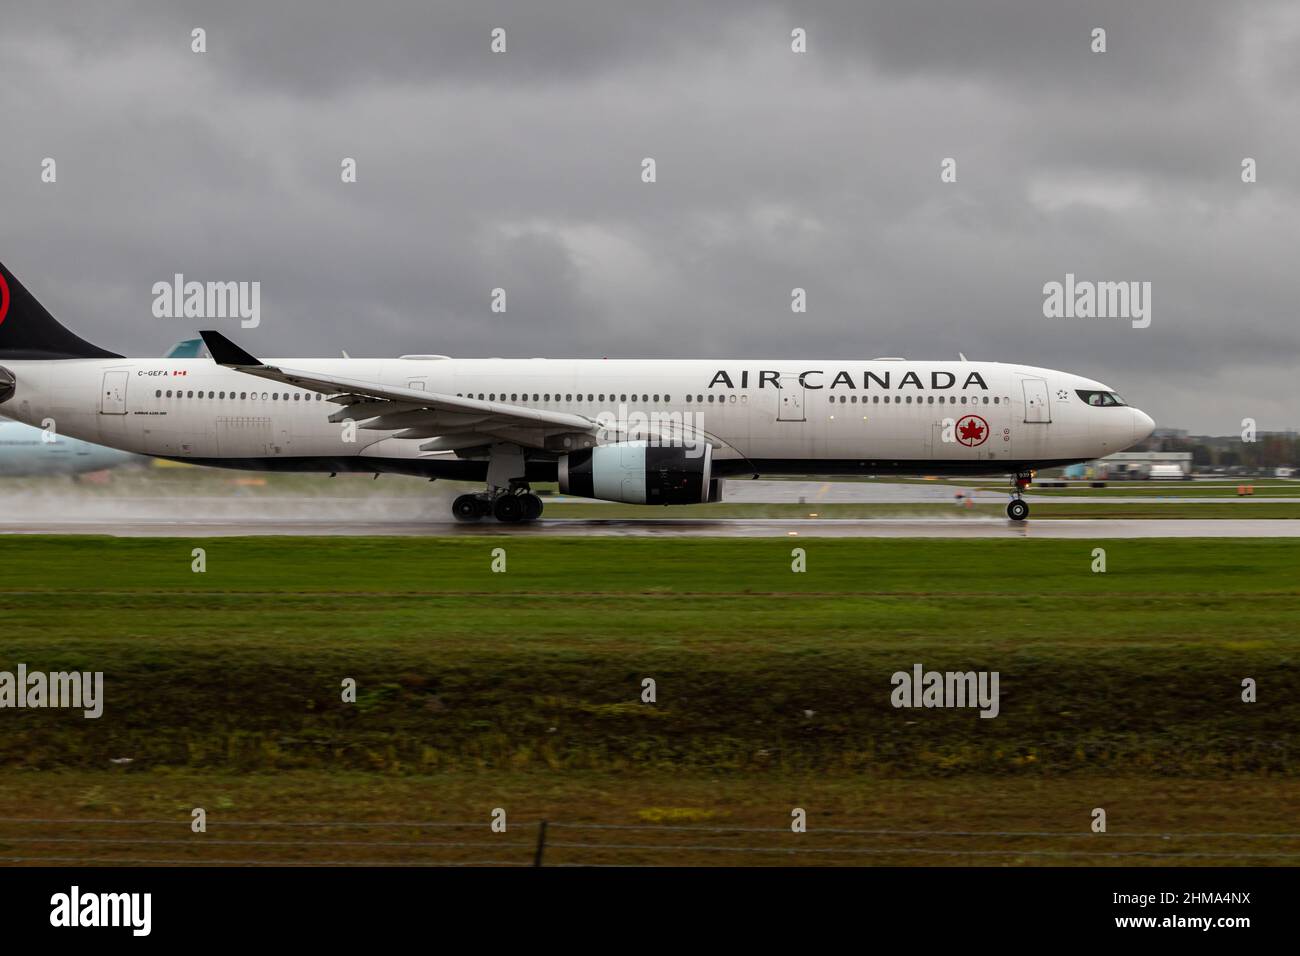 Montreal, Quebec, Canada 10-02-2021: Air Canada Airbus A330-300 decollo da Montreal in un pomeriggio piovoso. REGISTRAZIONE C-GEFA, FIN 939. Foto Stock